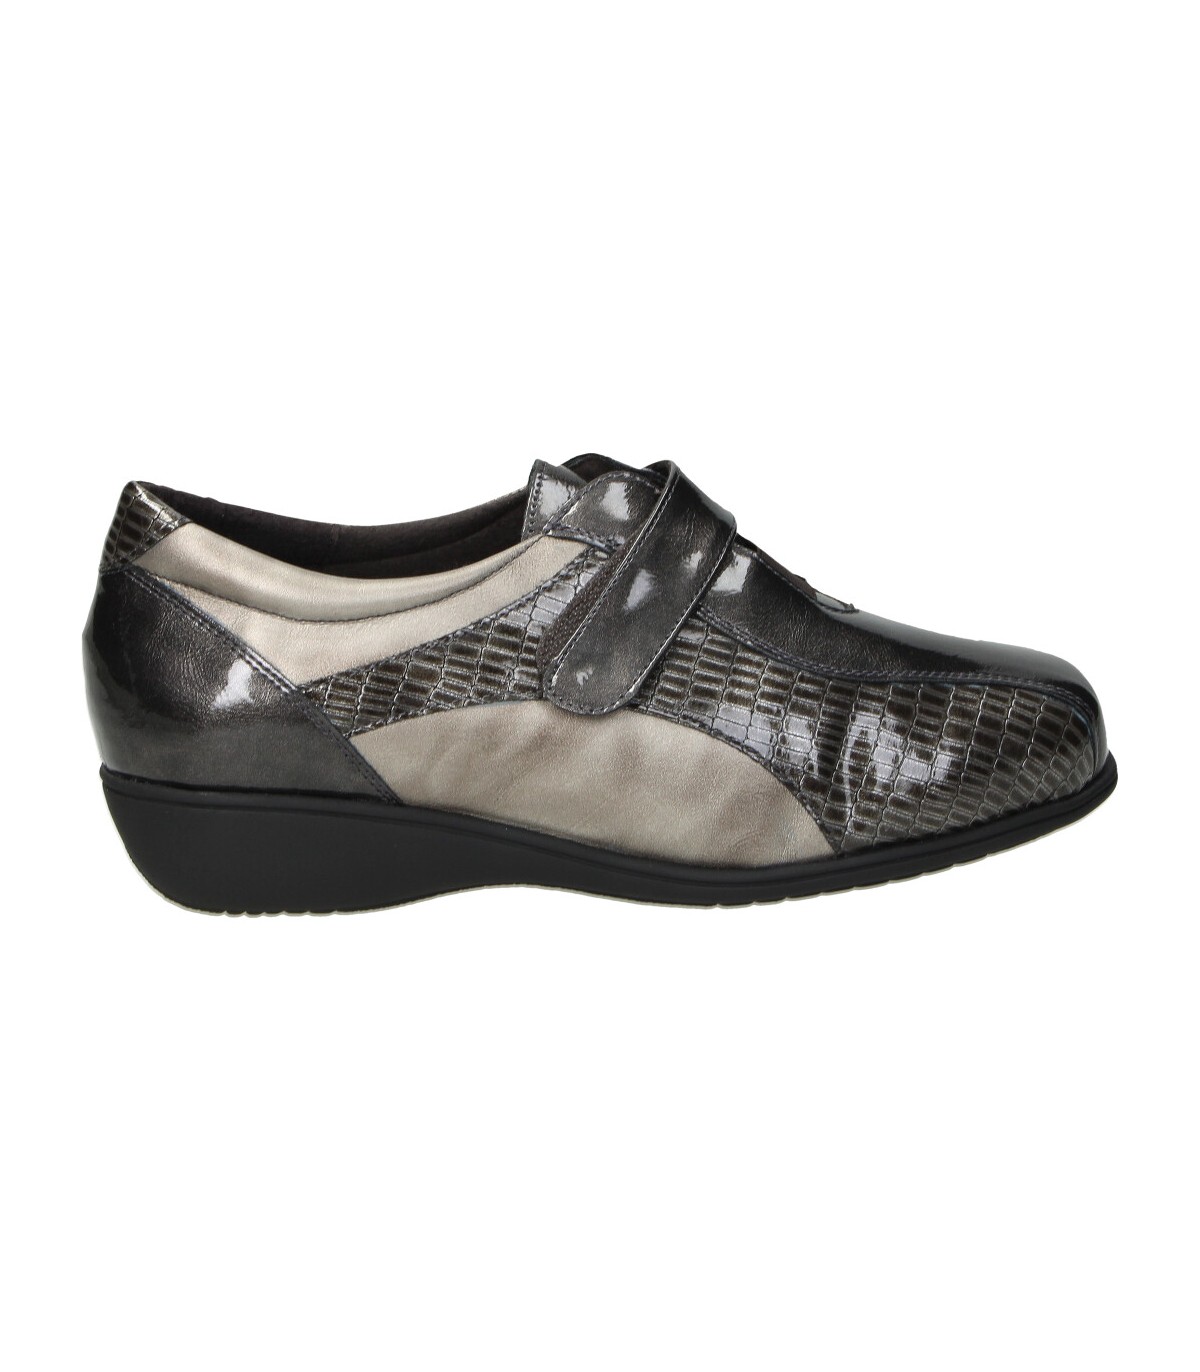 Zapatos para mujer plana CUTILLAS 53551 en gris